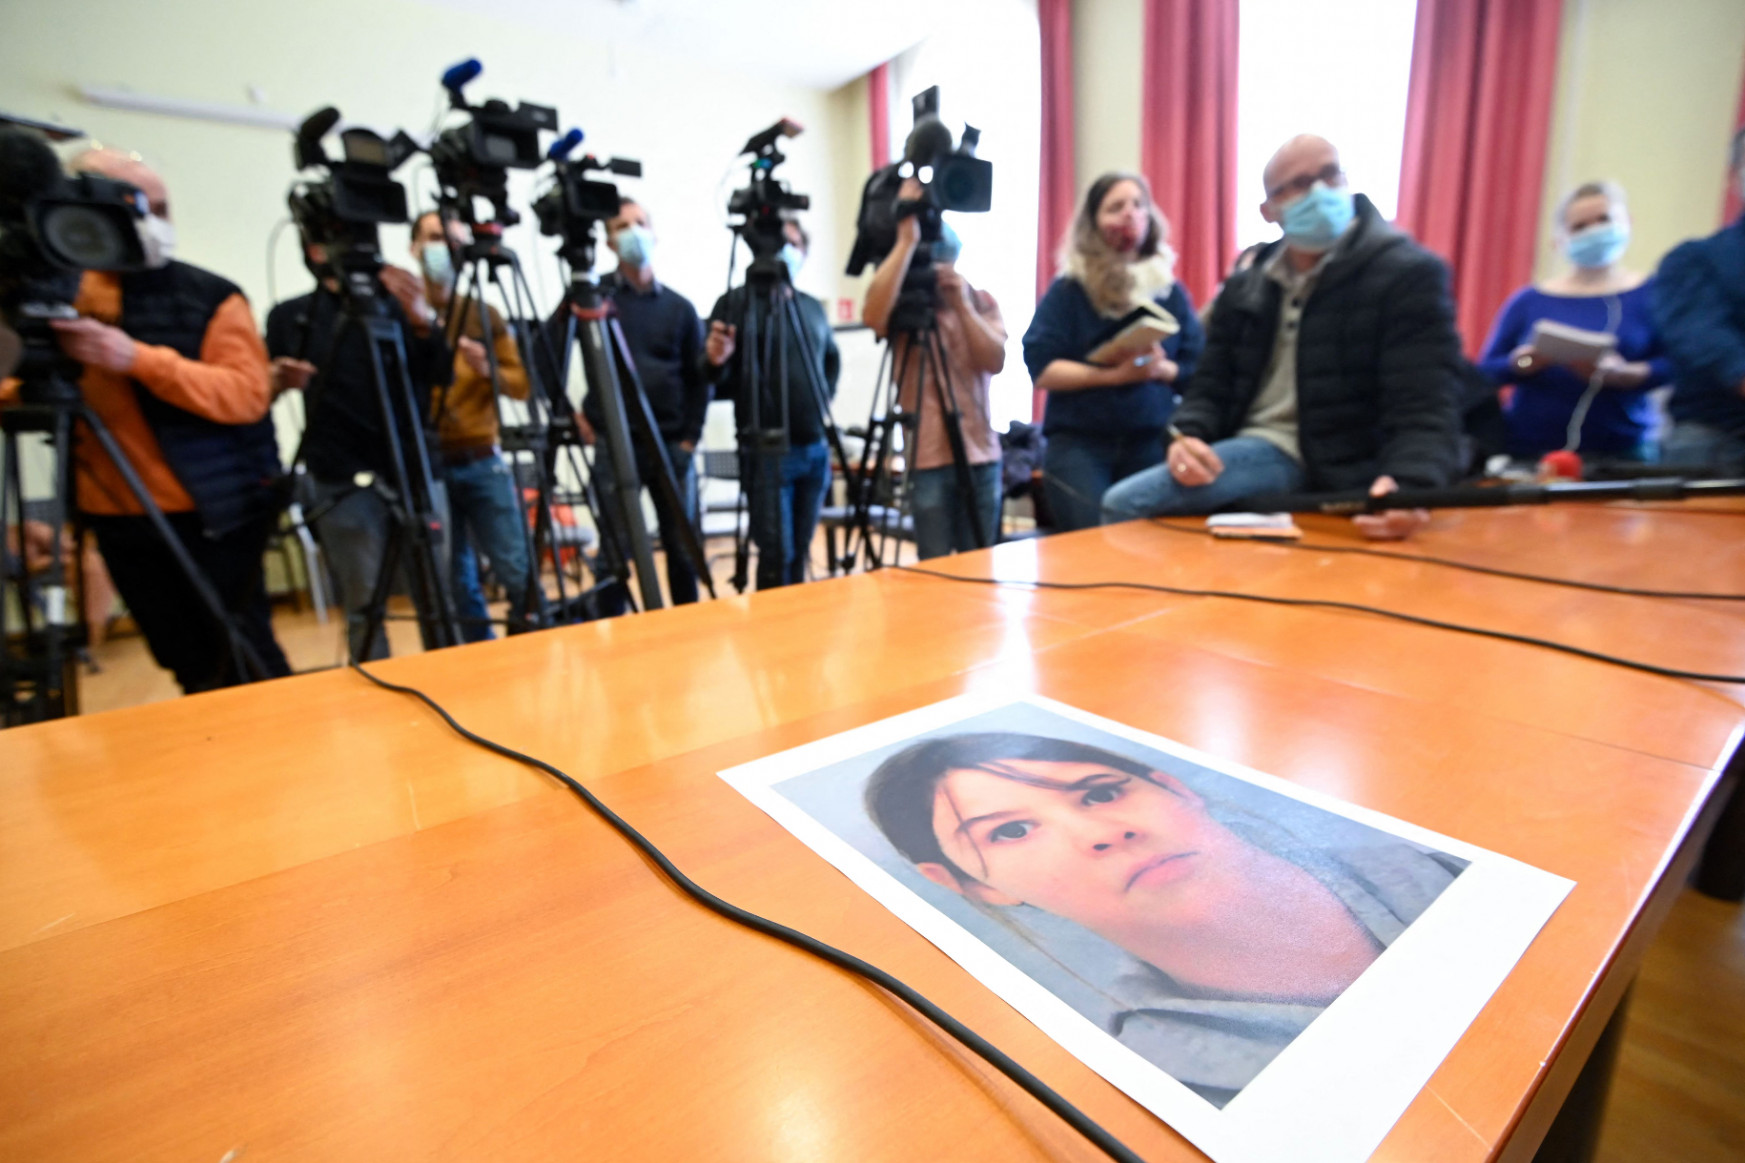 Egy fekete öves összeesküvéselmélet-hívő állhatott a francia kislány elrablása mögött